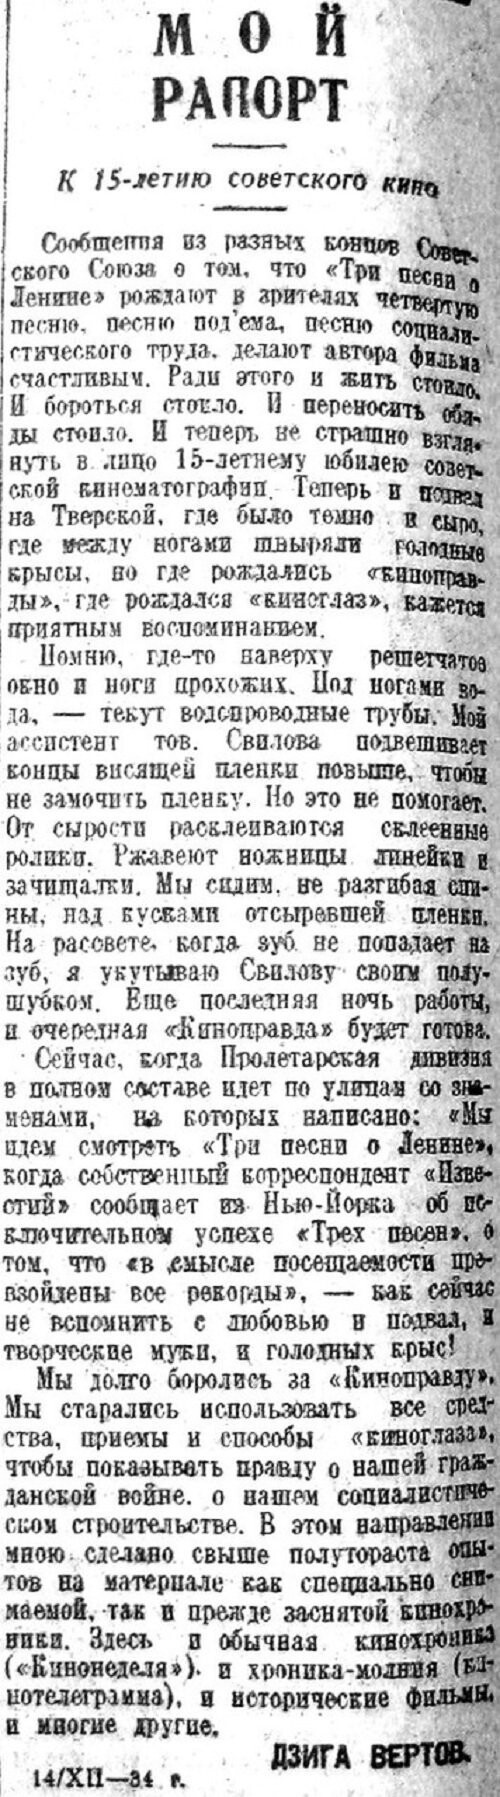 «Известия», 15 декабря 1934 г.